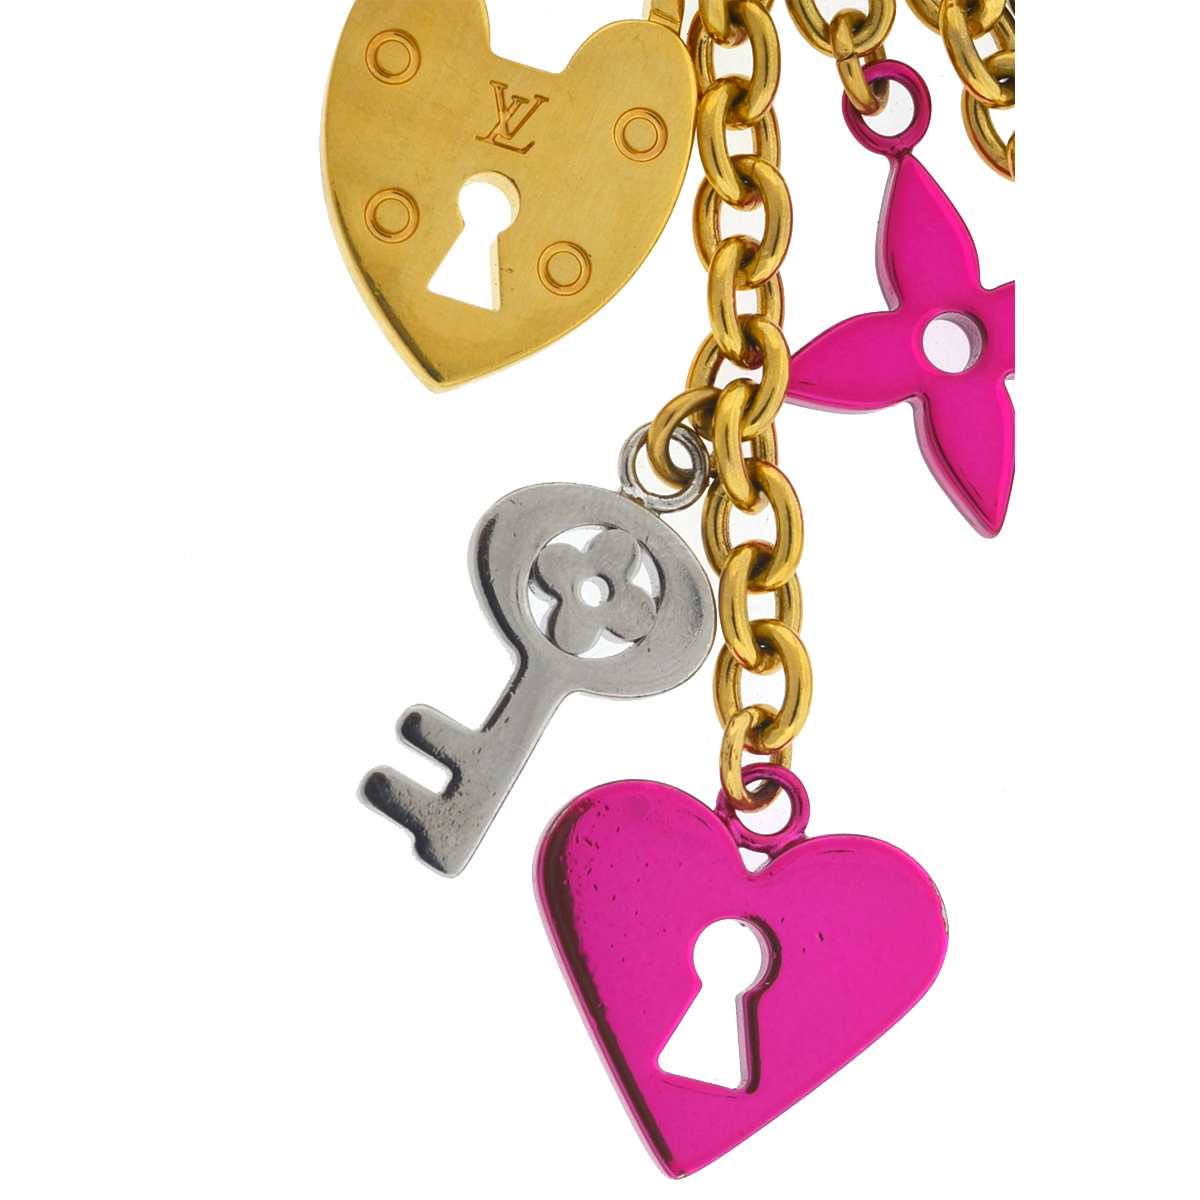 Louis Vuitton Love Lock Heart and Keys Bag Charm Key Chain - Boca